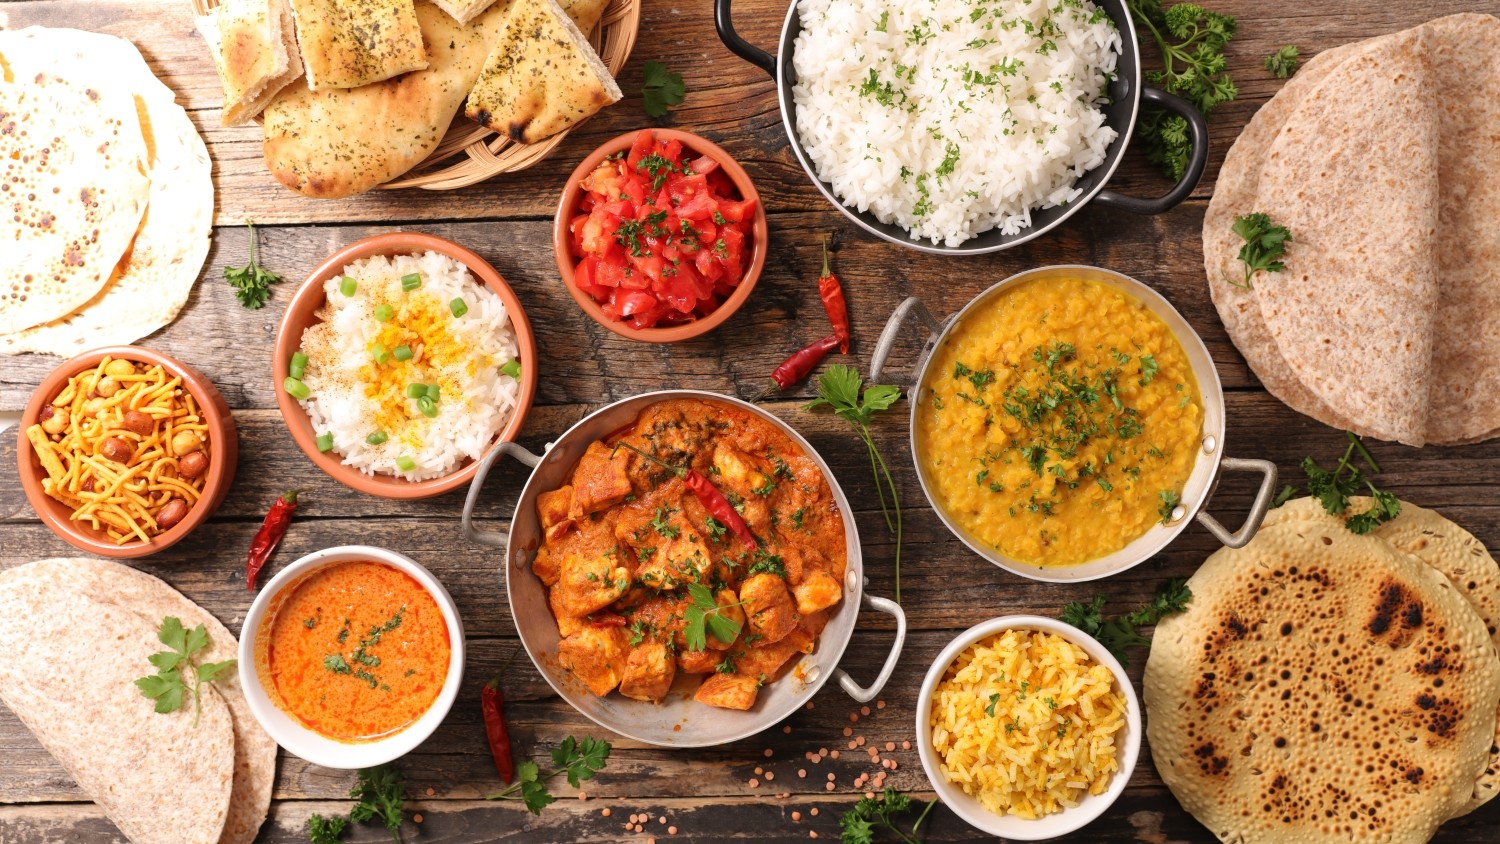 Czym charakteryzuje się kuchnia indyjska?